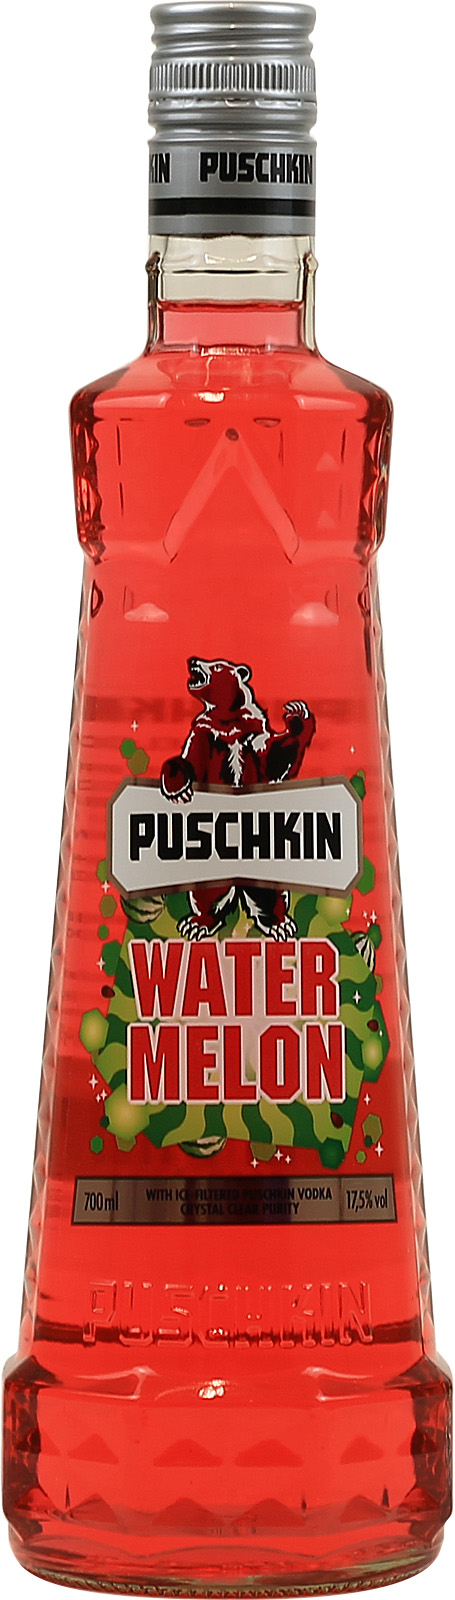 Der Puschkin Wassermelone ist ein fruchtig-leichter Lik